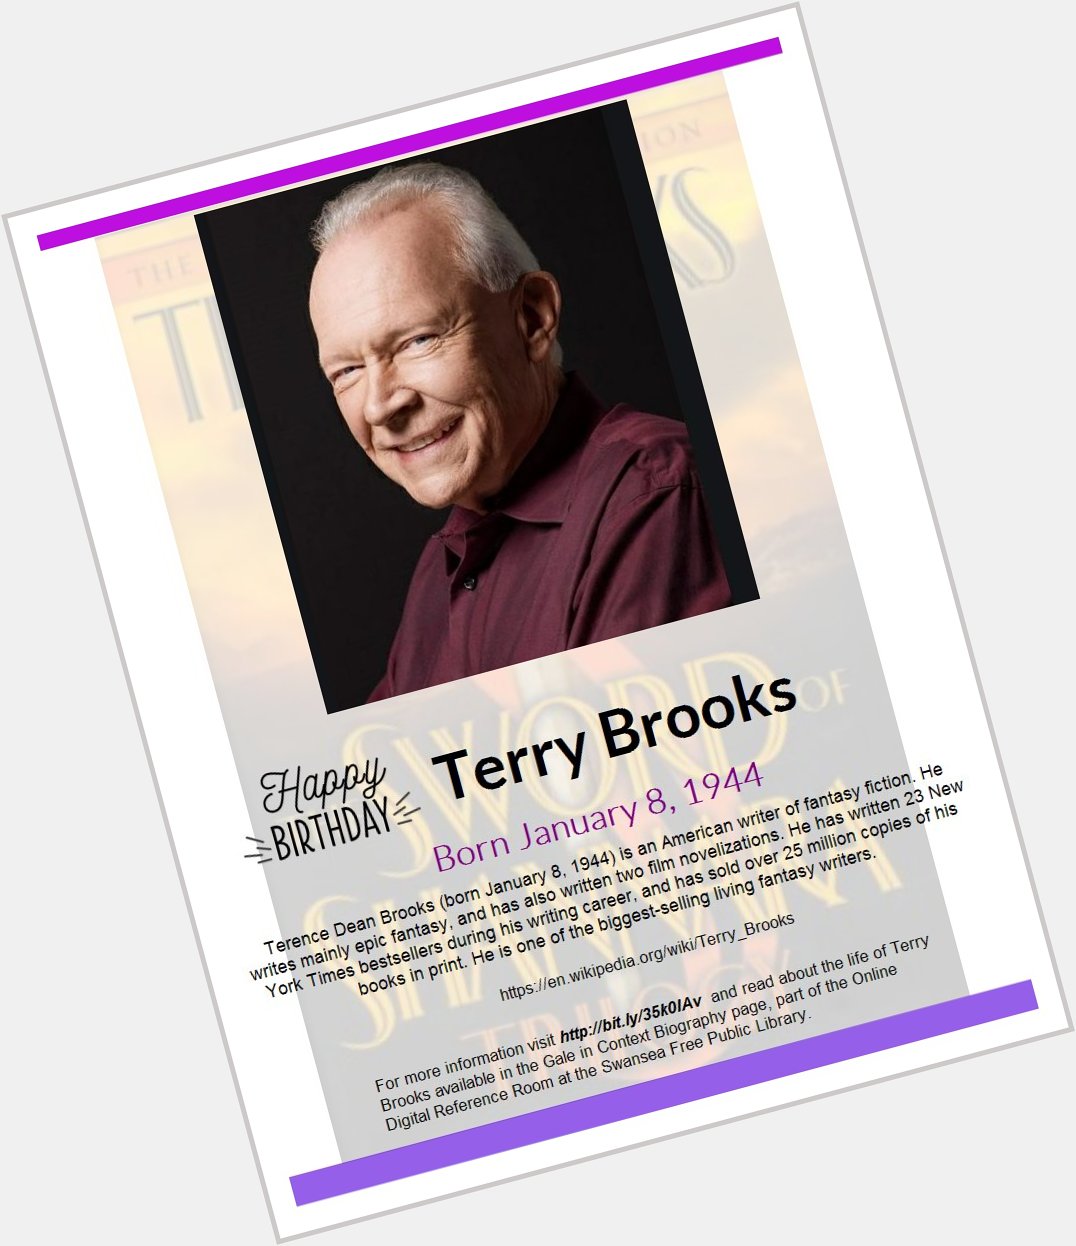 Happy Birthday Terry Brooks!  